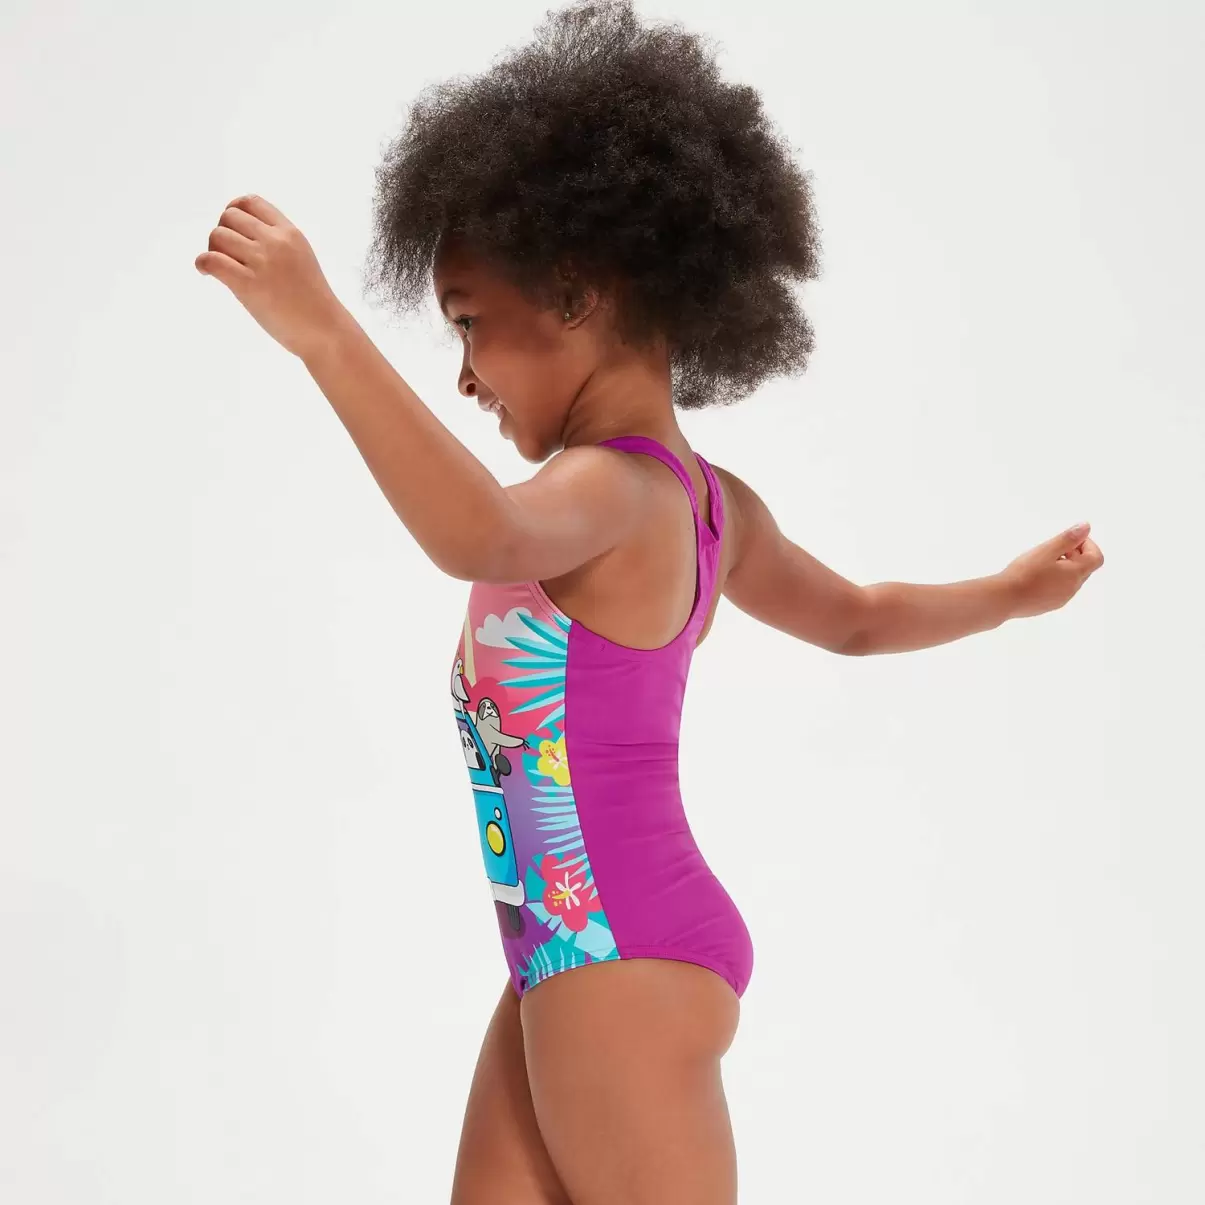 Kinder Bedruckter Badeanzug Für Mädchen Im Kleinkindalter Violett Mädchen Bademode Speedo